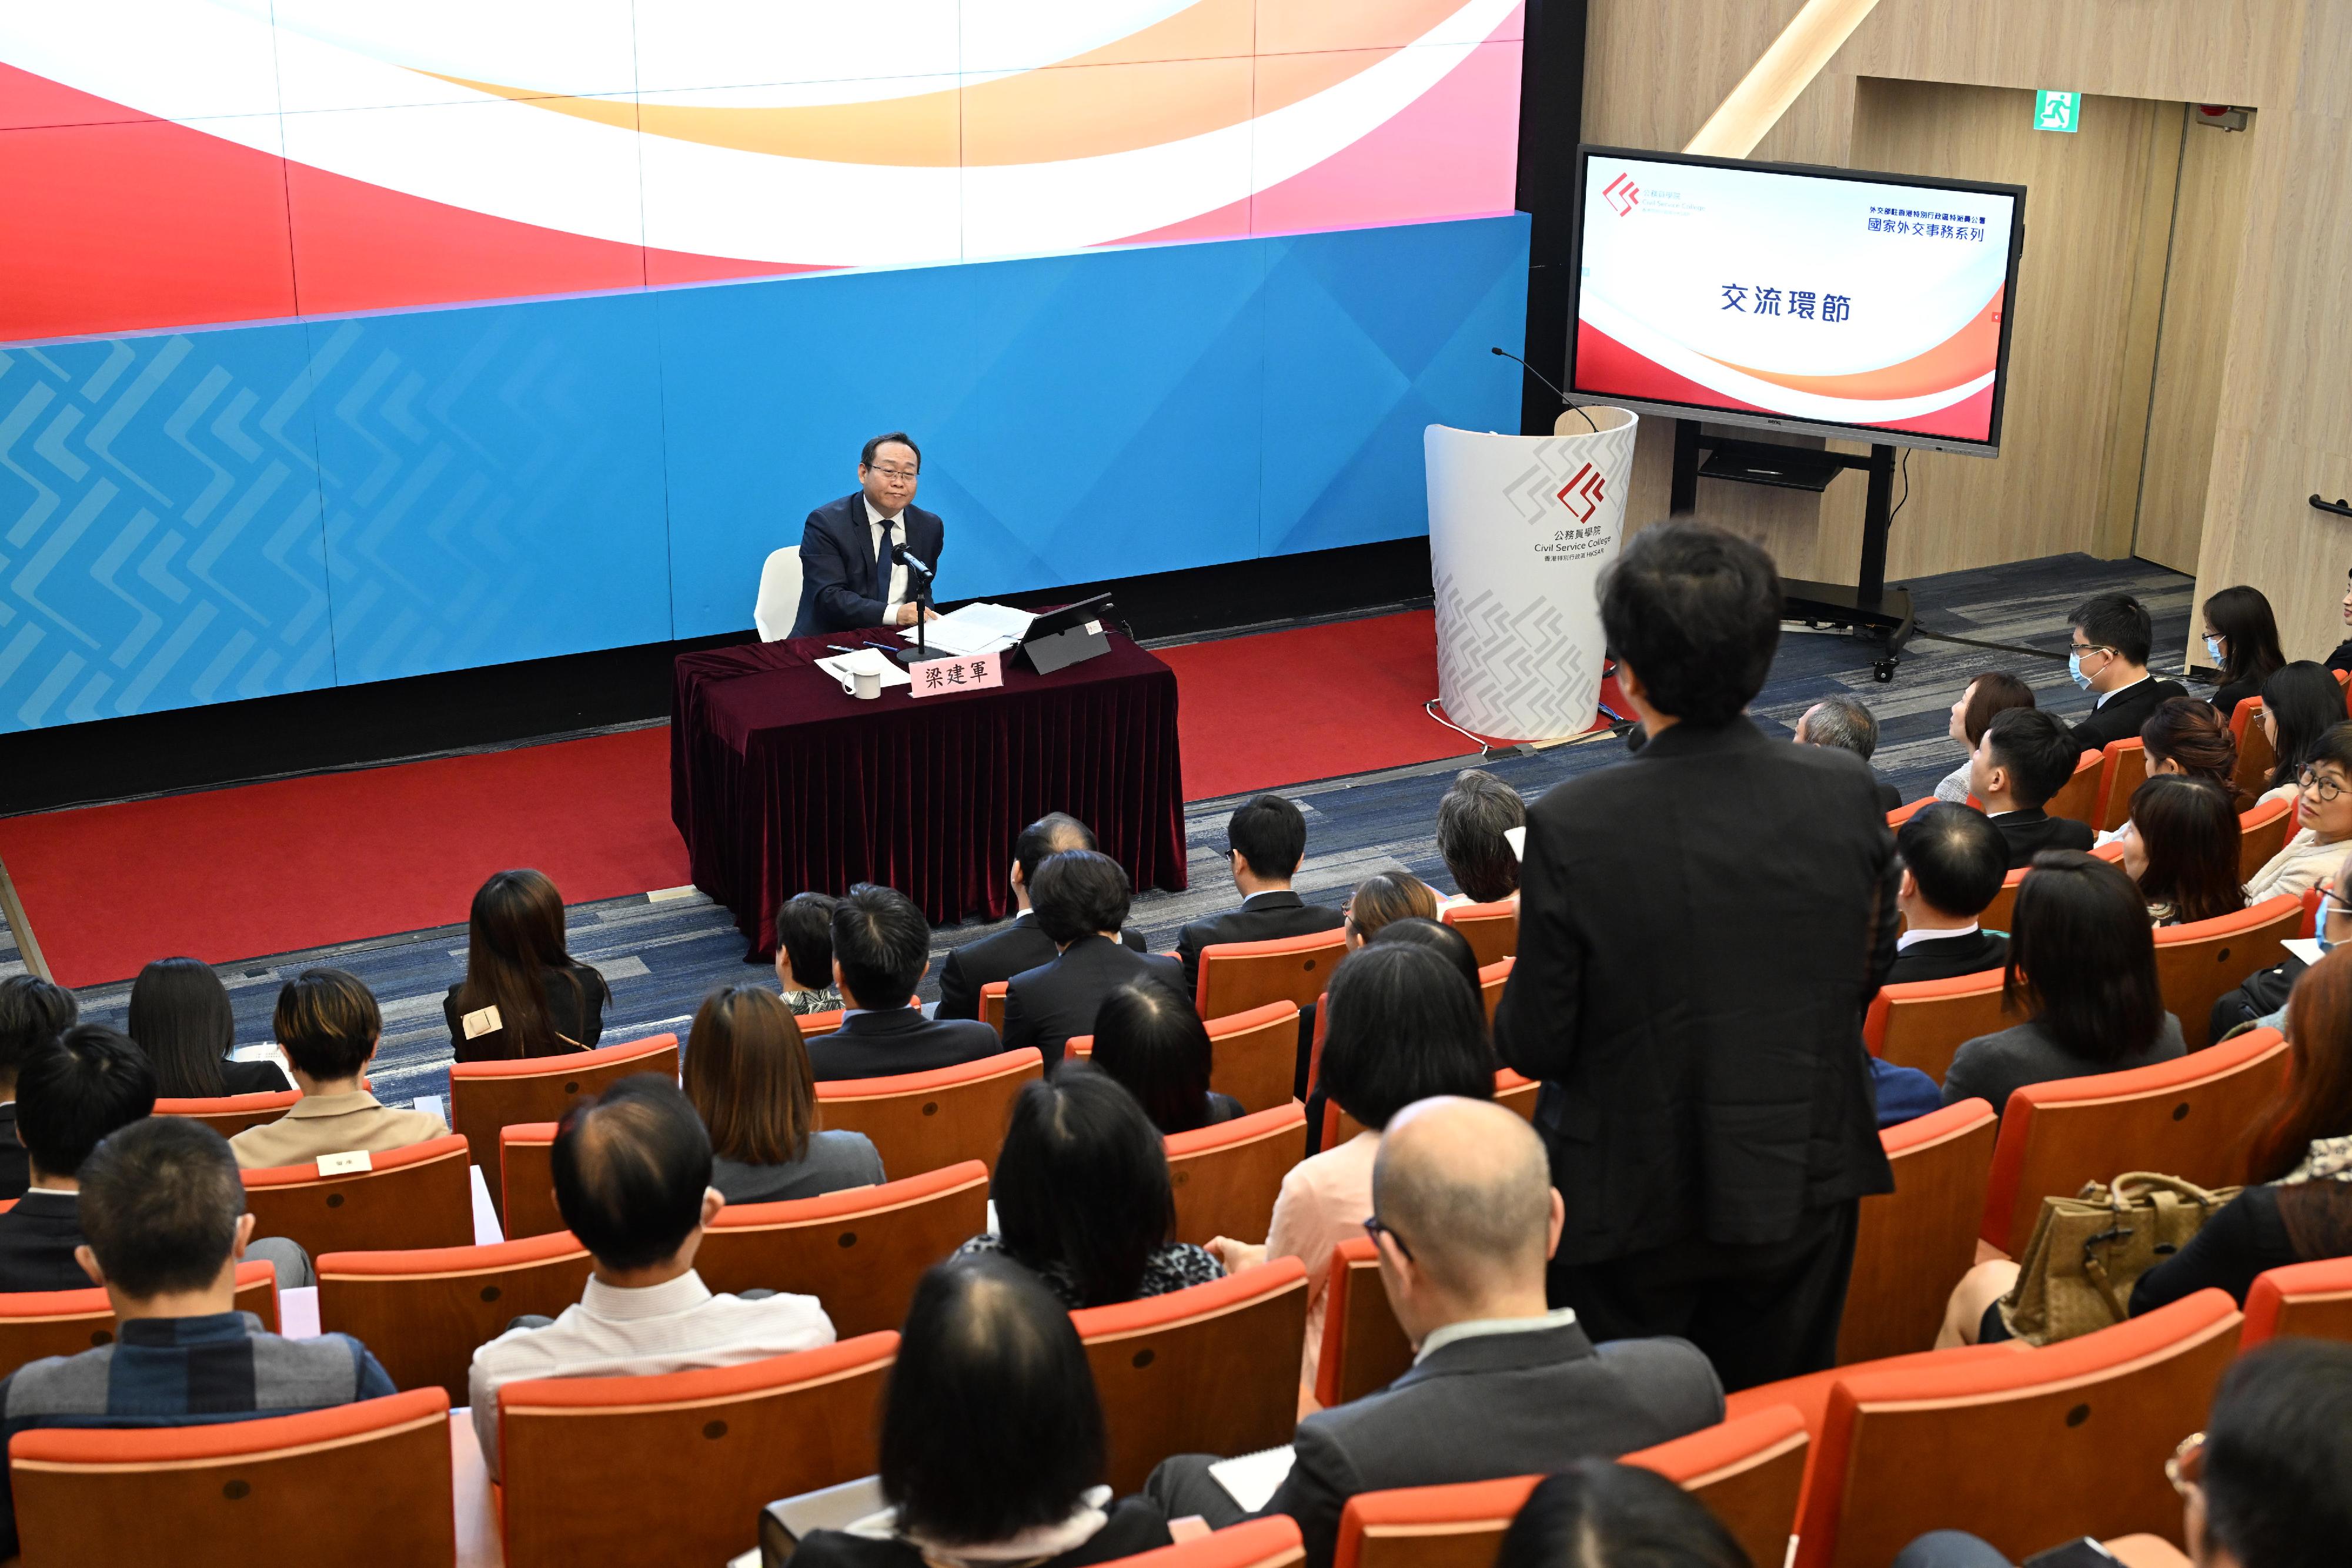 公務員學院今日（八月二十八日）與外交部駐香港特別行政區特派員公署舉辦「國家外交事務系列」講座，主題為「中國與東南亞國家關係」。圖示參與學員在交流環節發言。
 


